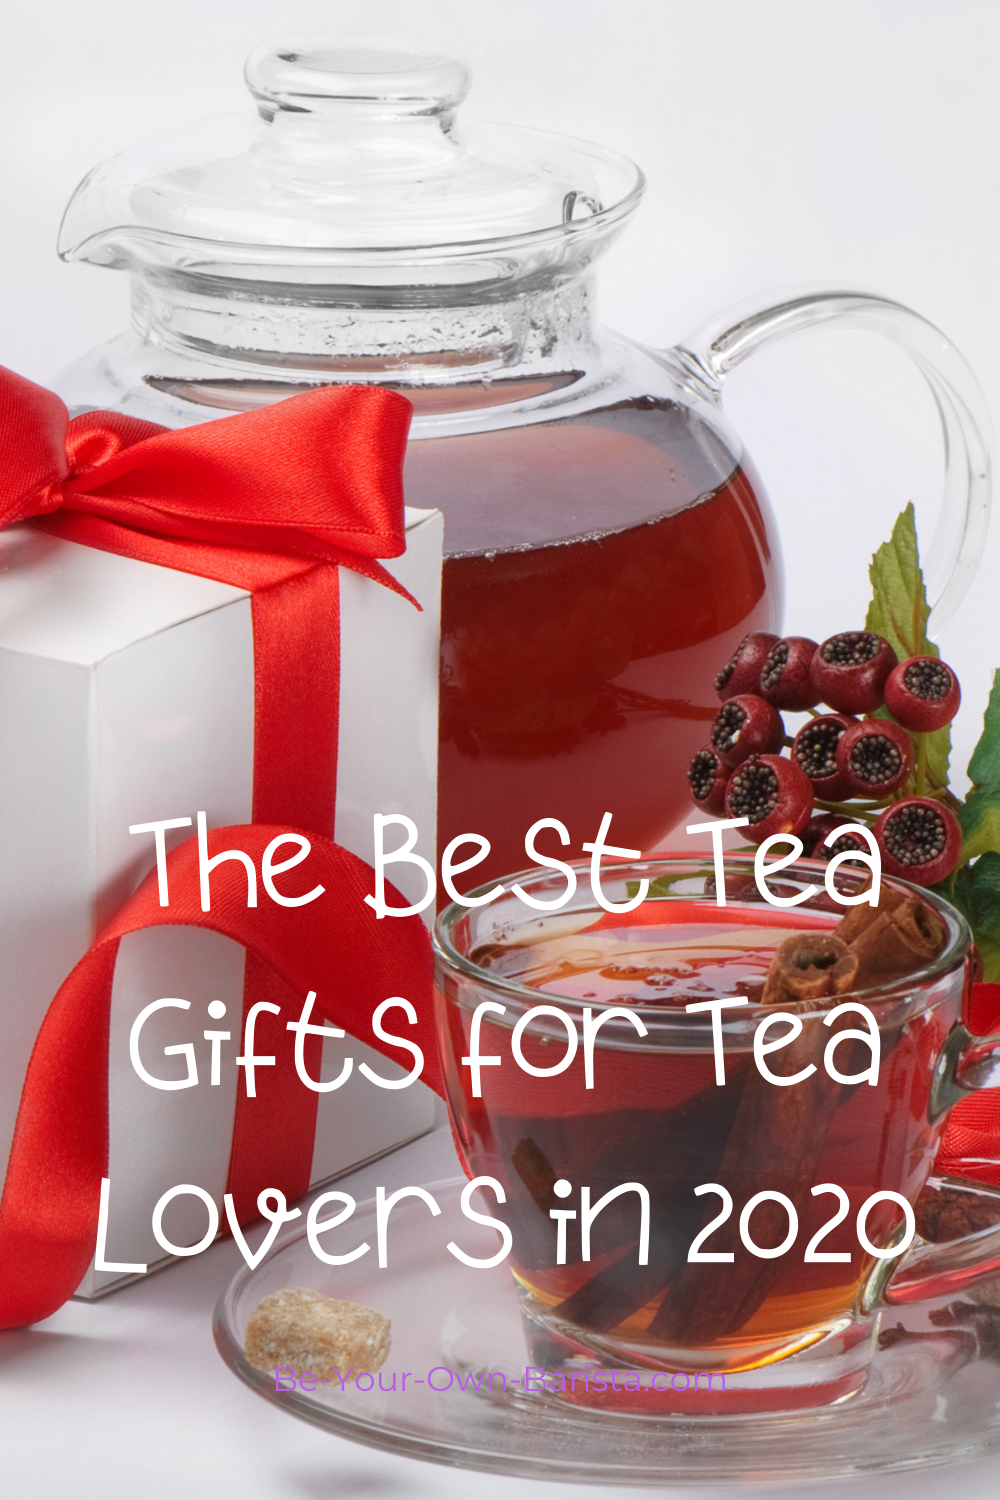 Tea Lovers gift ideas